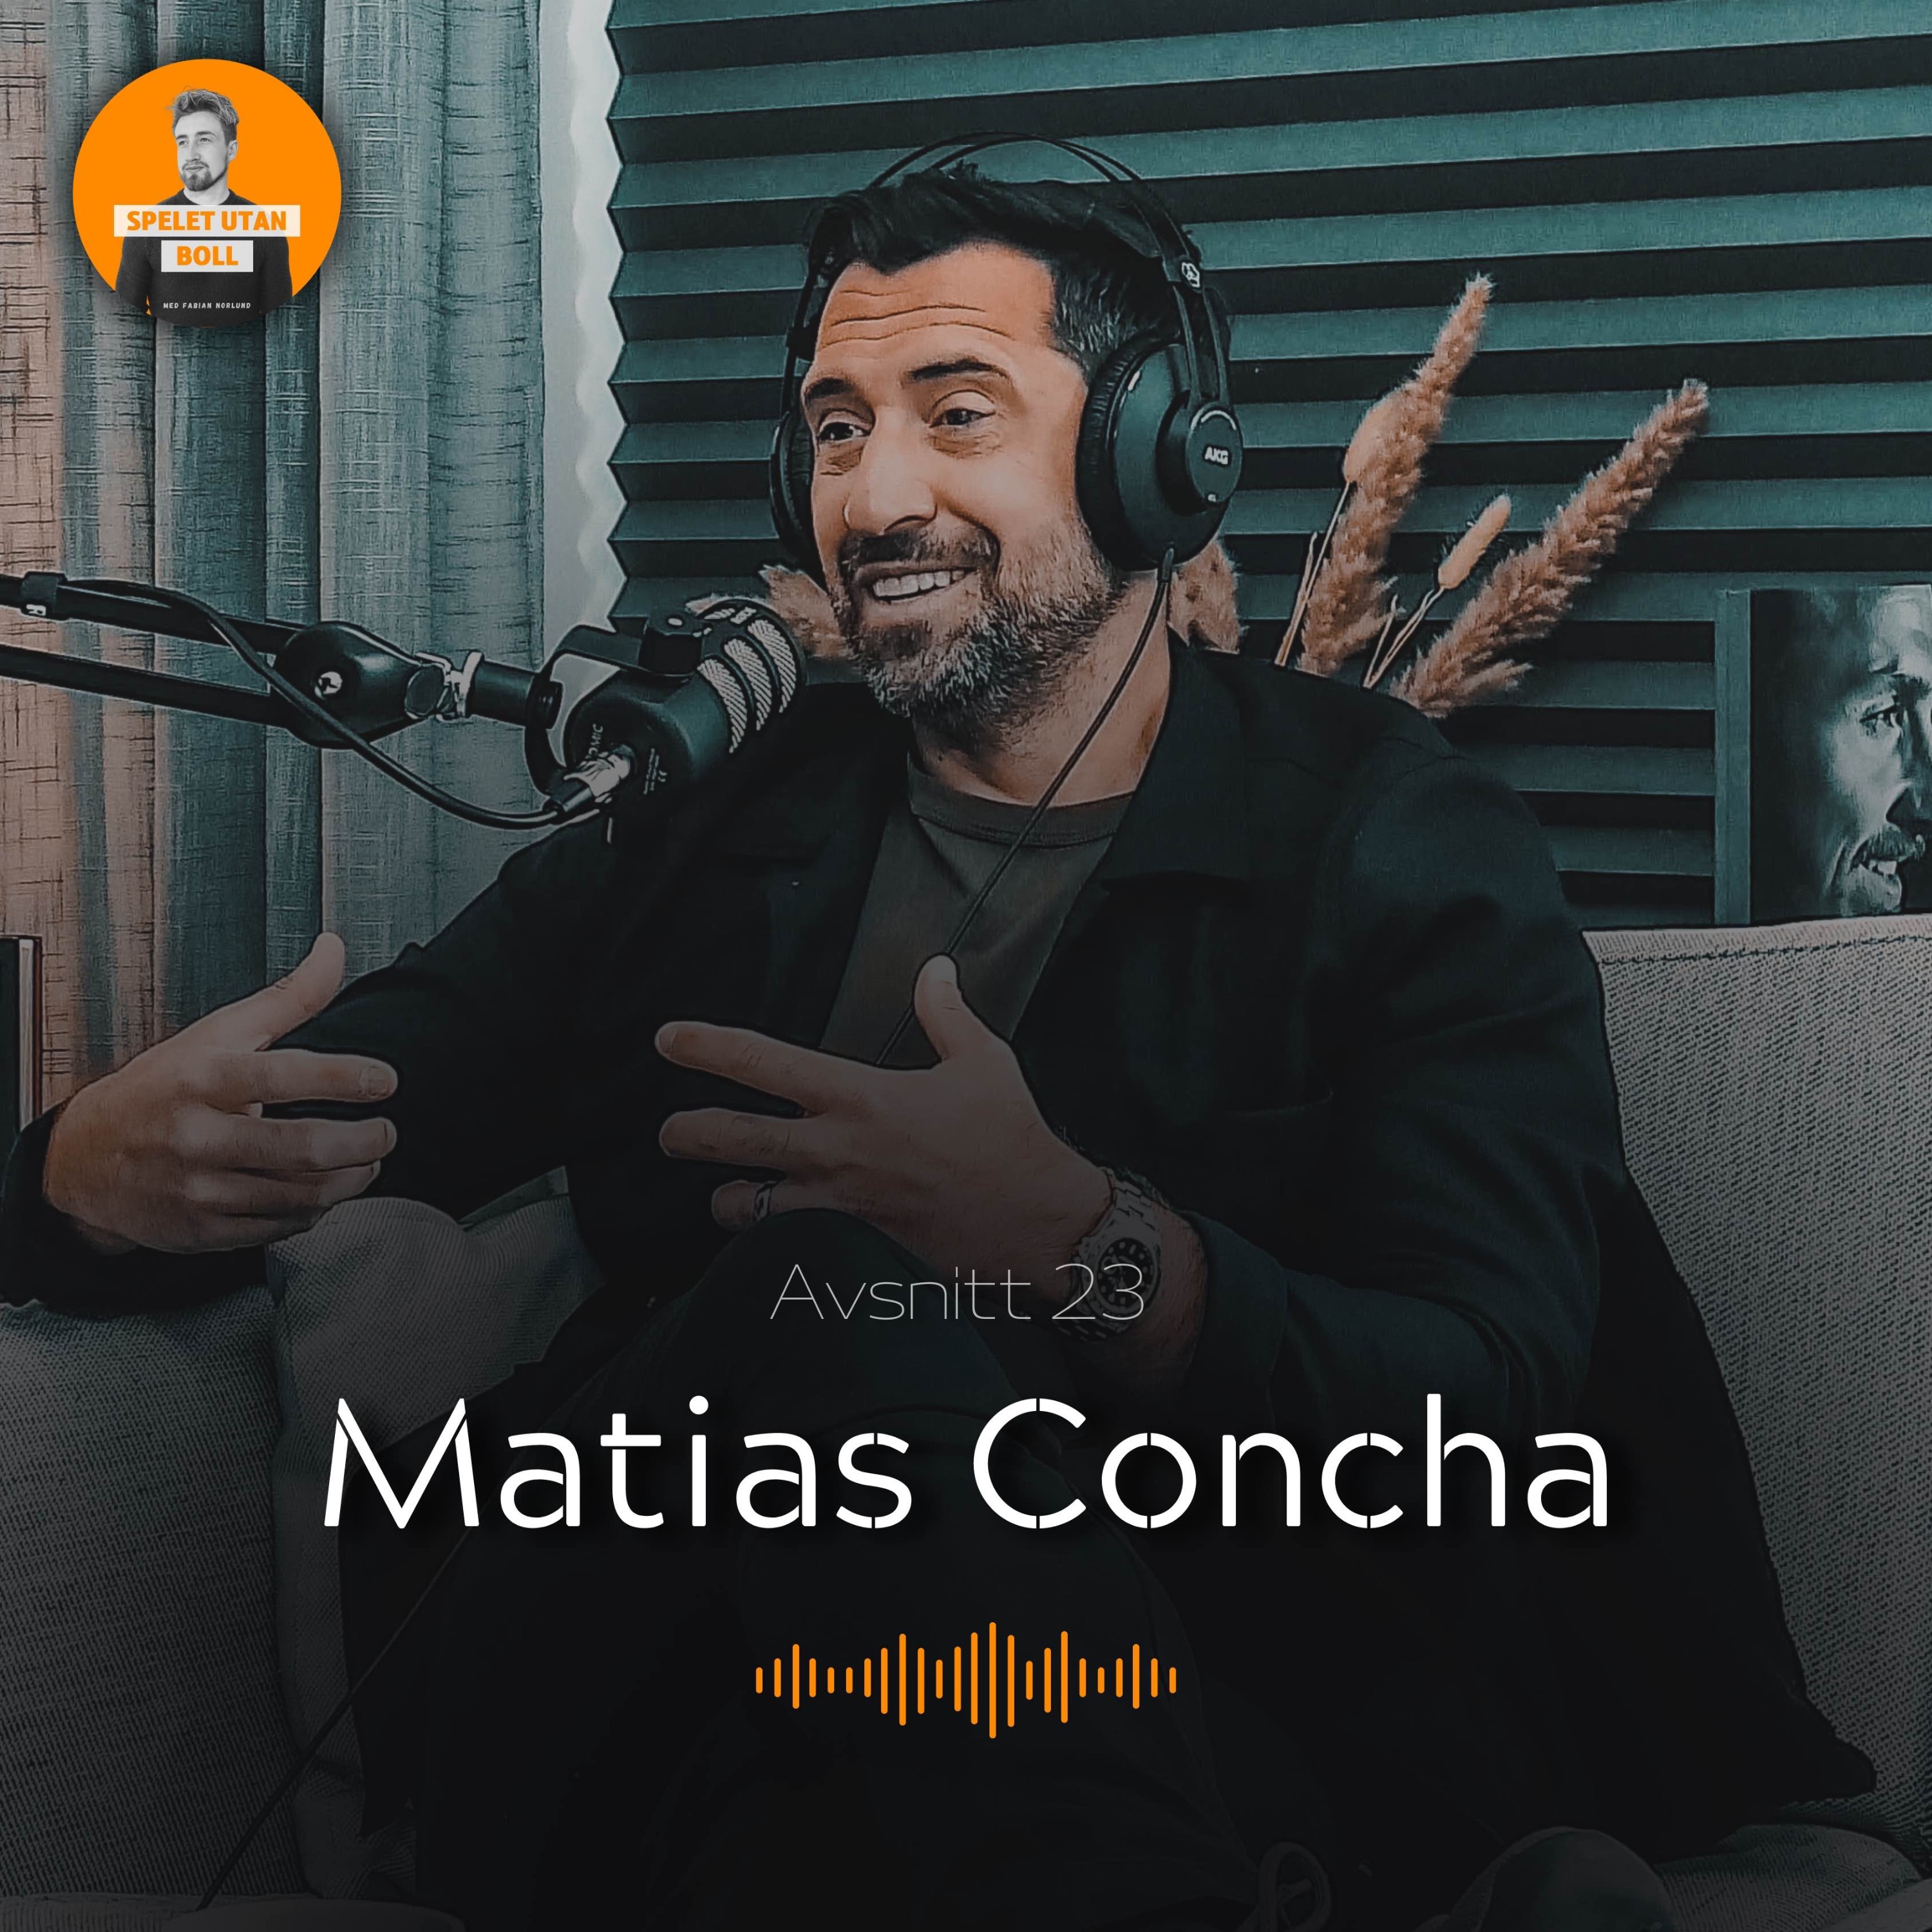 cover art for Matias Concha | Spelet Utan Boll #23